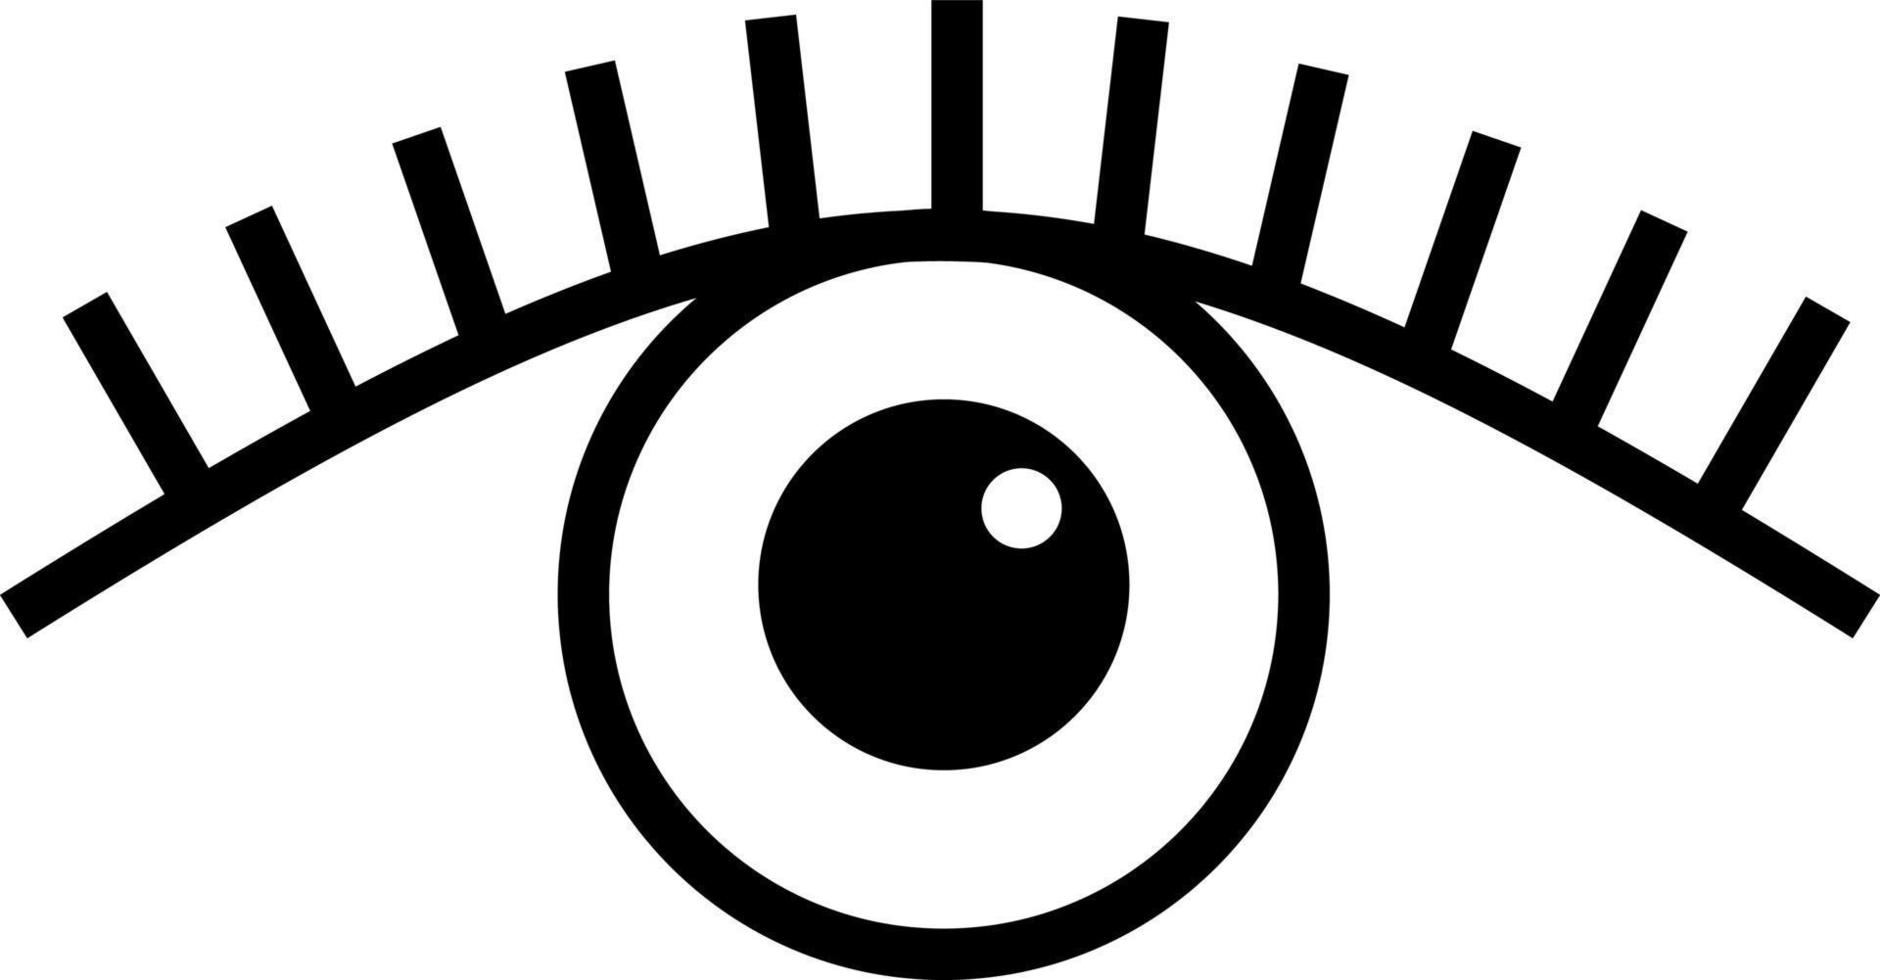 Images : icone oeil yeux ouverts vecteur